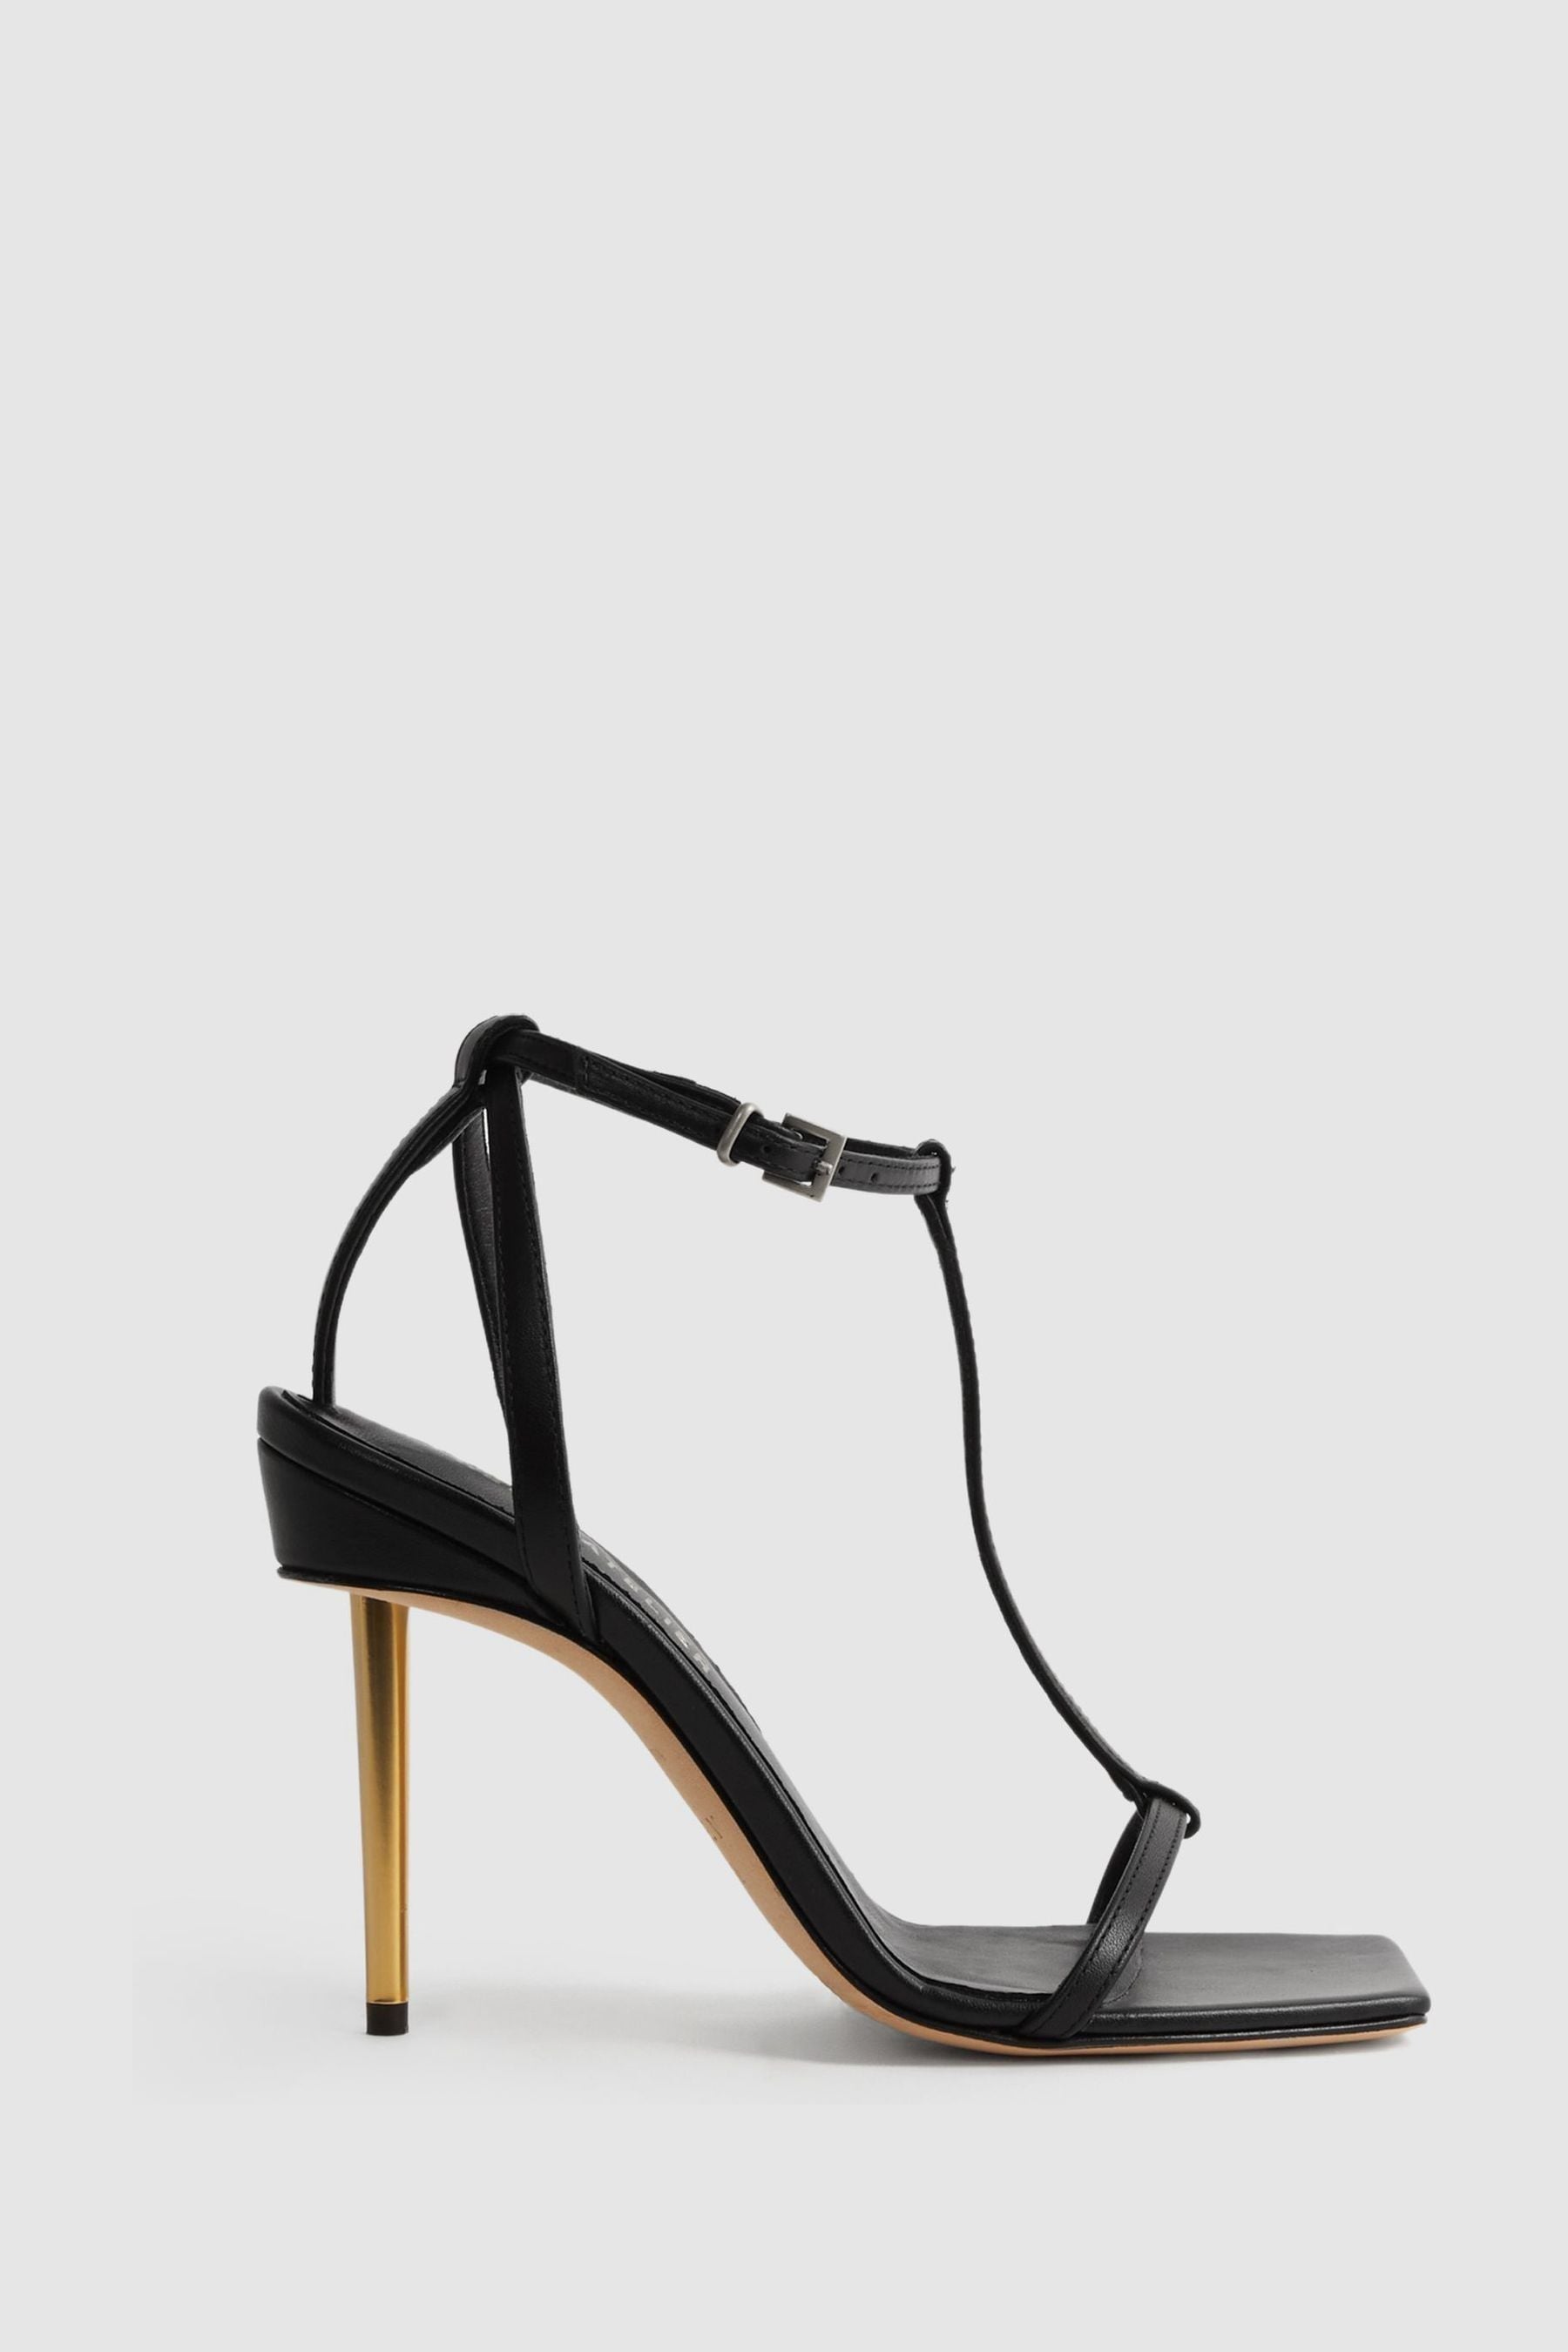 Reiss Sophia - Black Atelier Italian Leather Strappy Heels, Uk 3 Eu 36